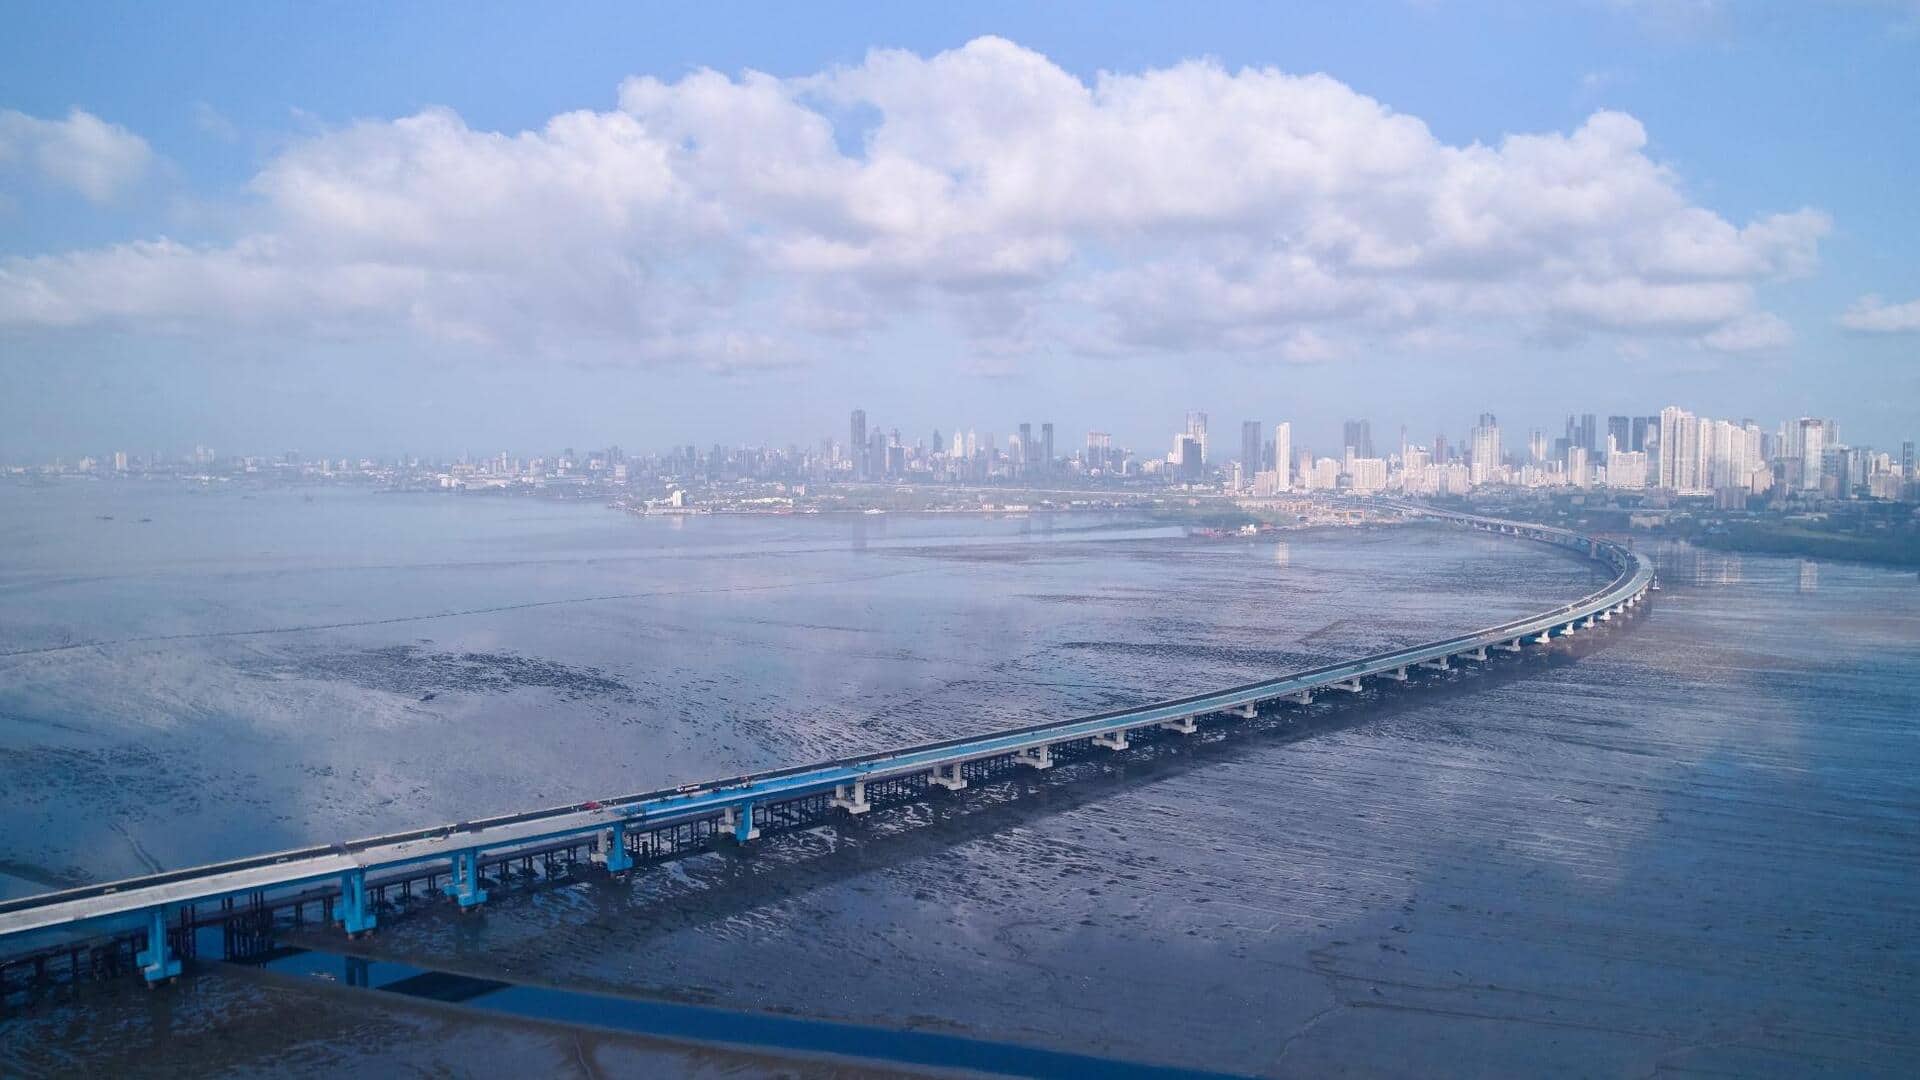 महाराष्ट्र: समुद्र के ऊपर बना देश का सबसे बड़ा पुल लगभग तैयार, दिसंबर में होगा शुरू